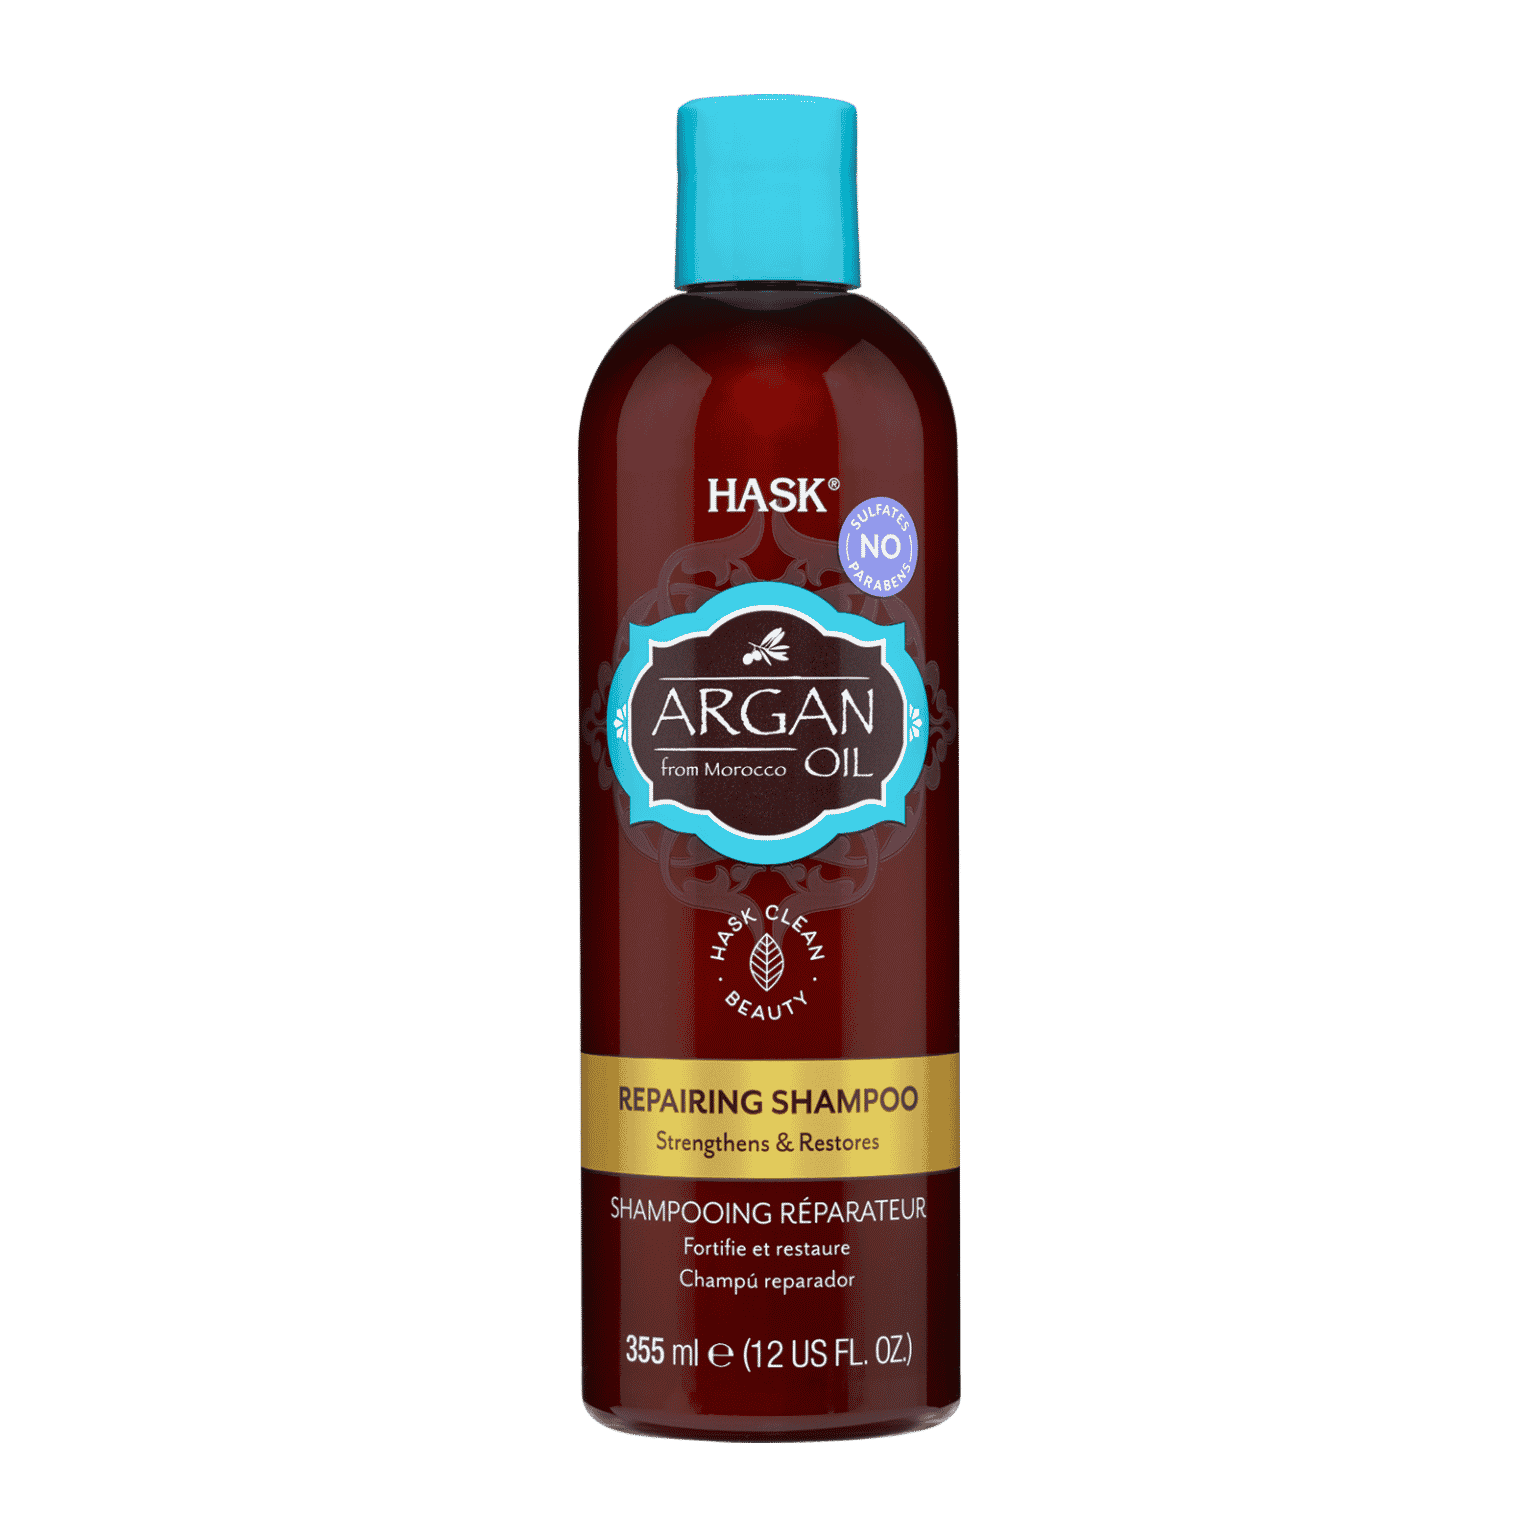 HASK ARGAN OIL – Repairing Shampoo (Shampooing Réparateur) 355 mL